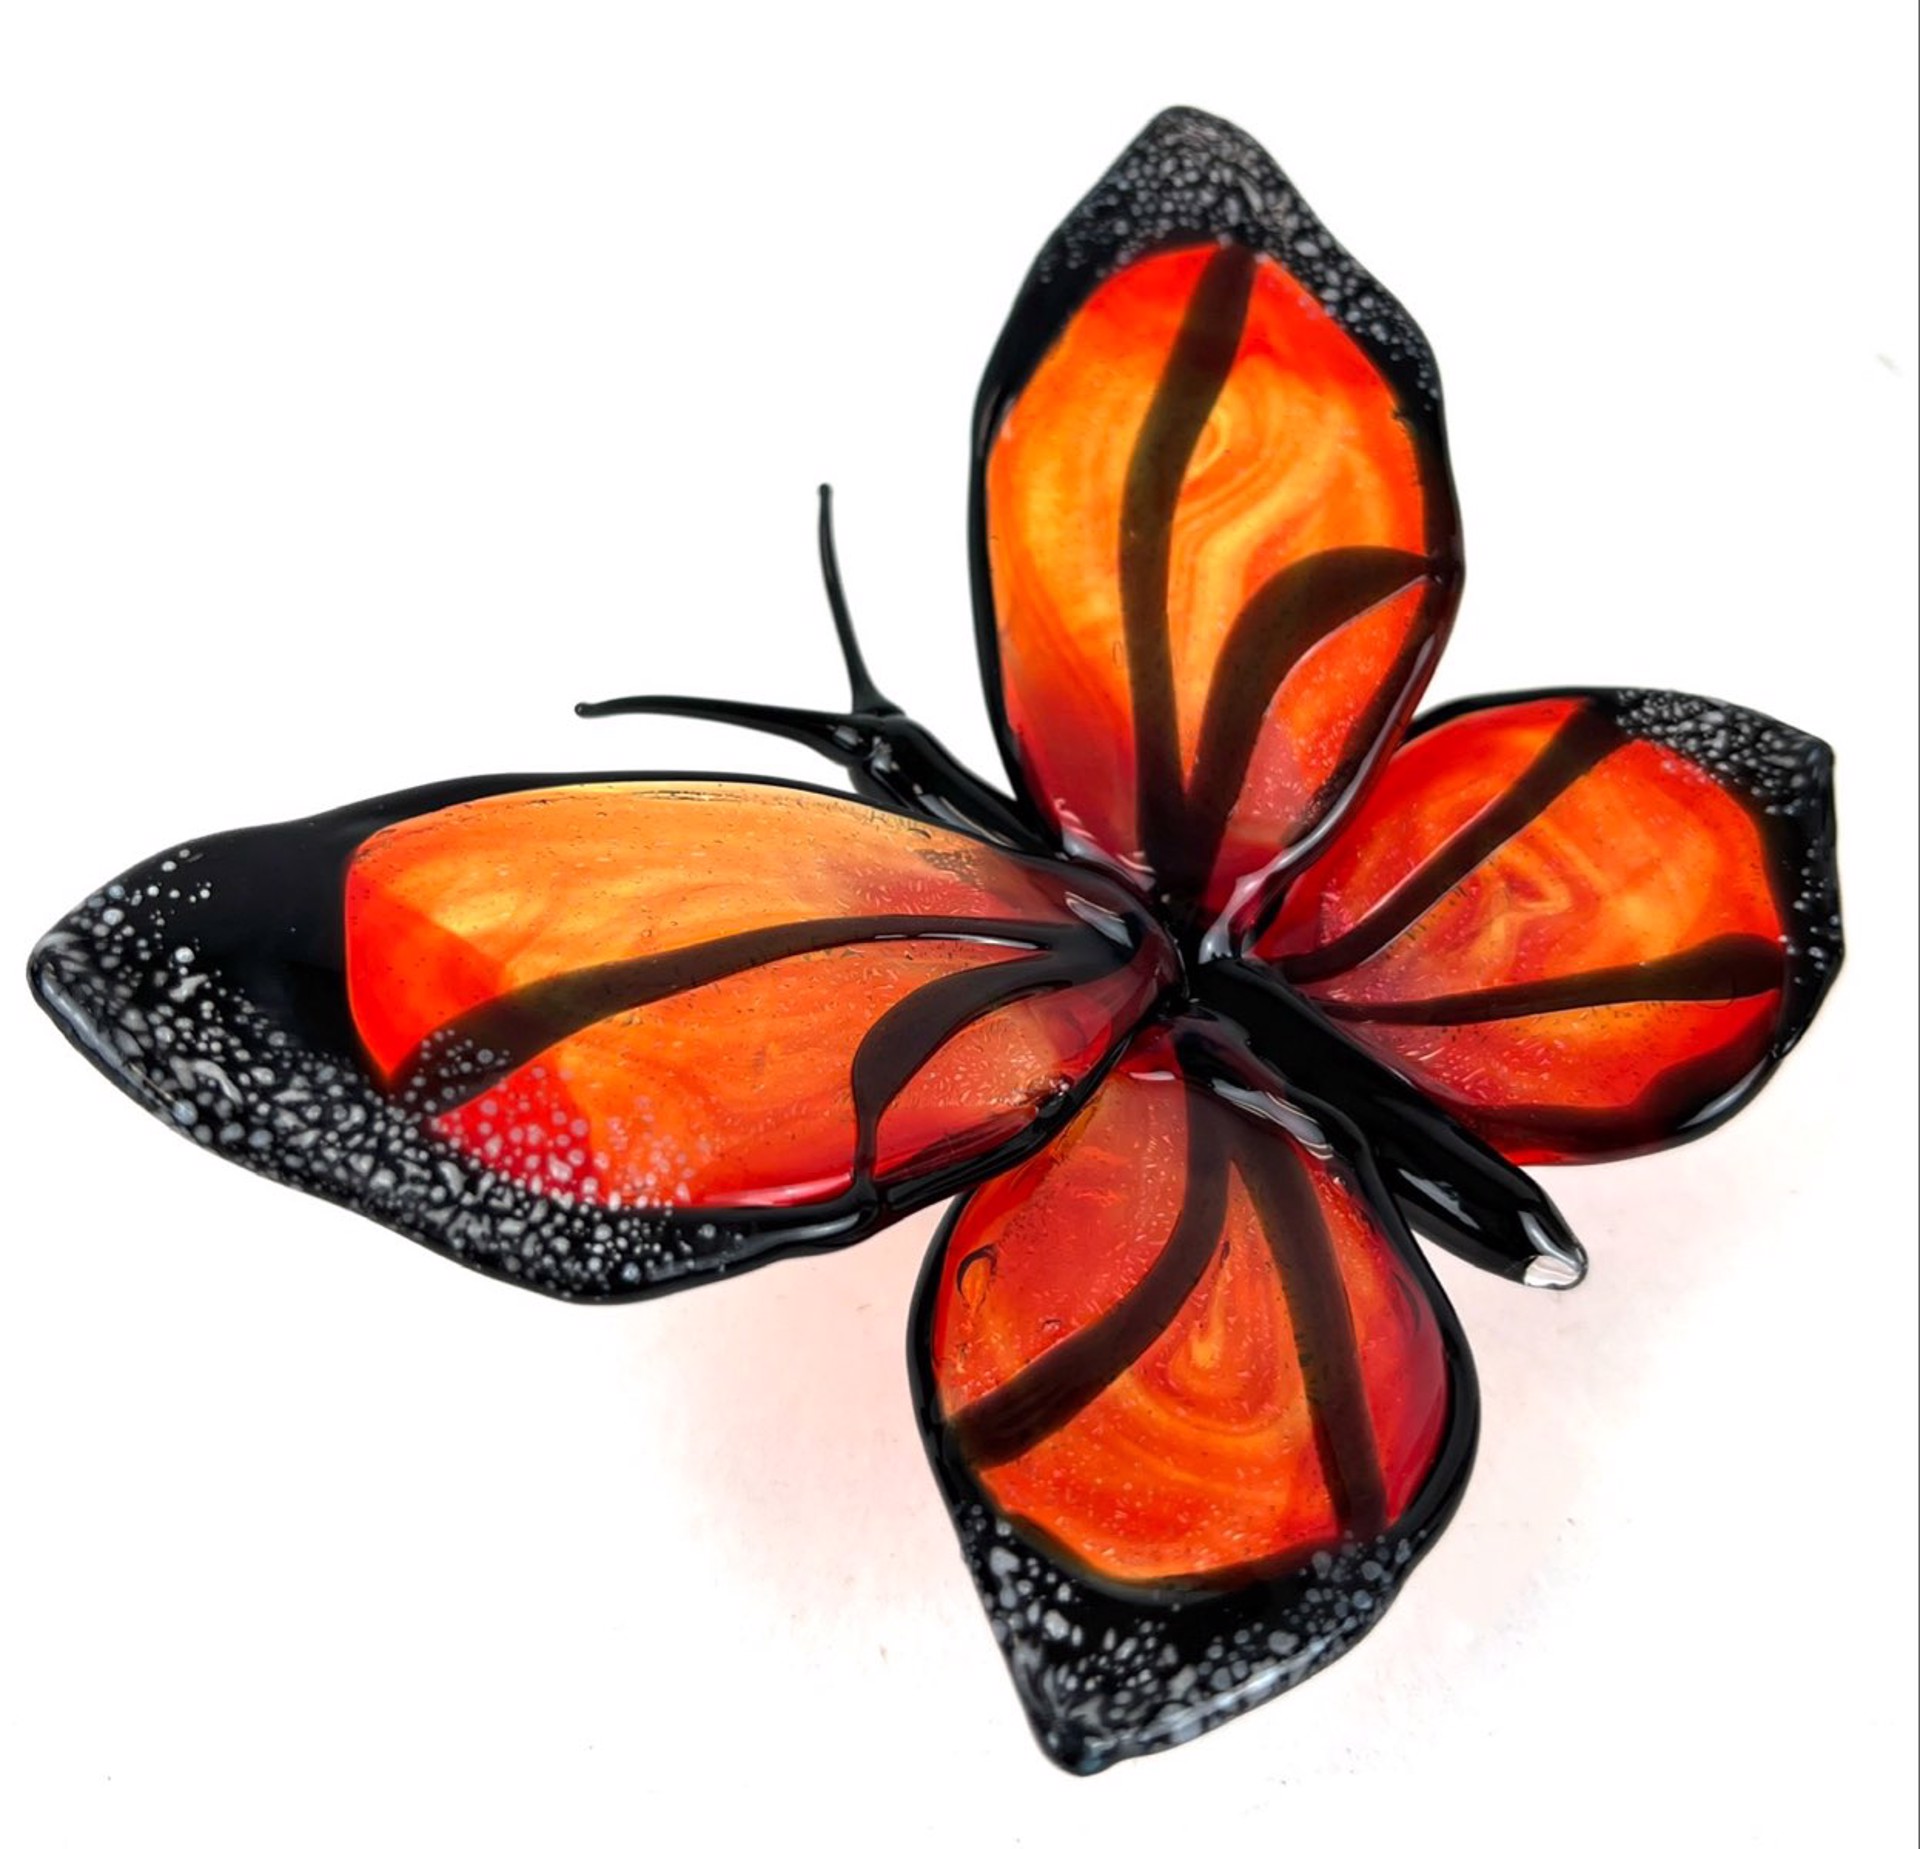 Monarch Butterfly by Loy Allen